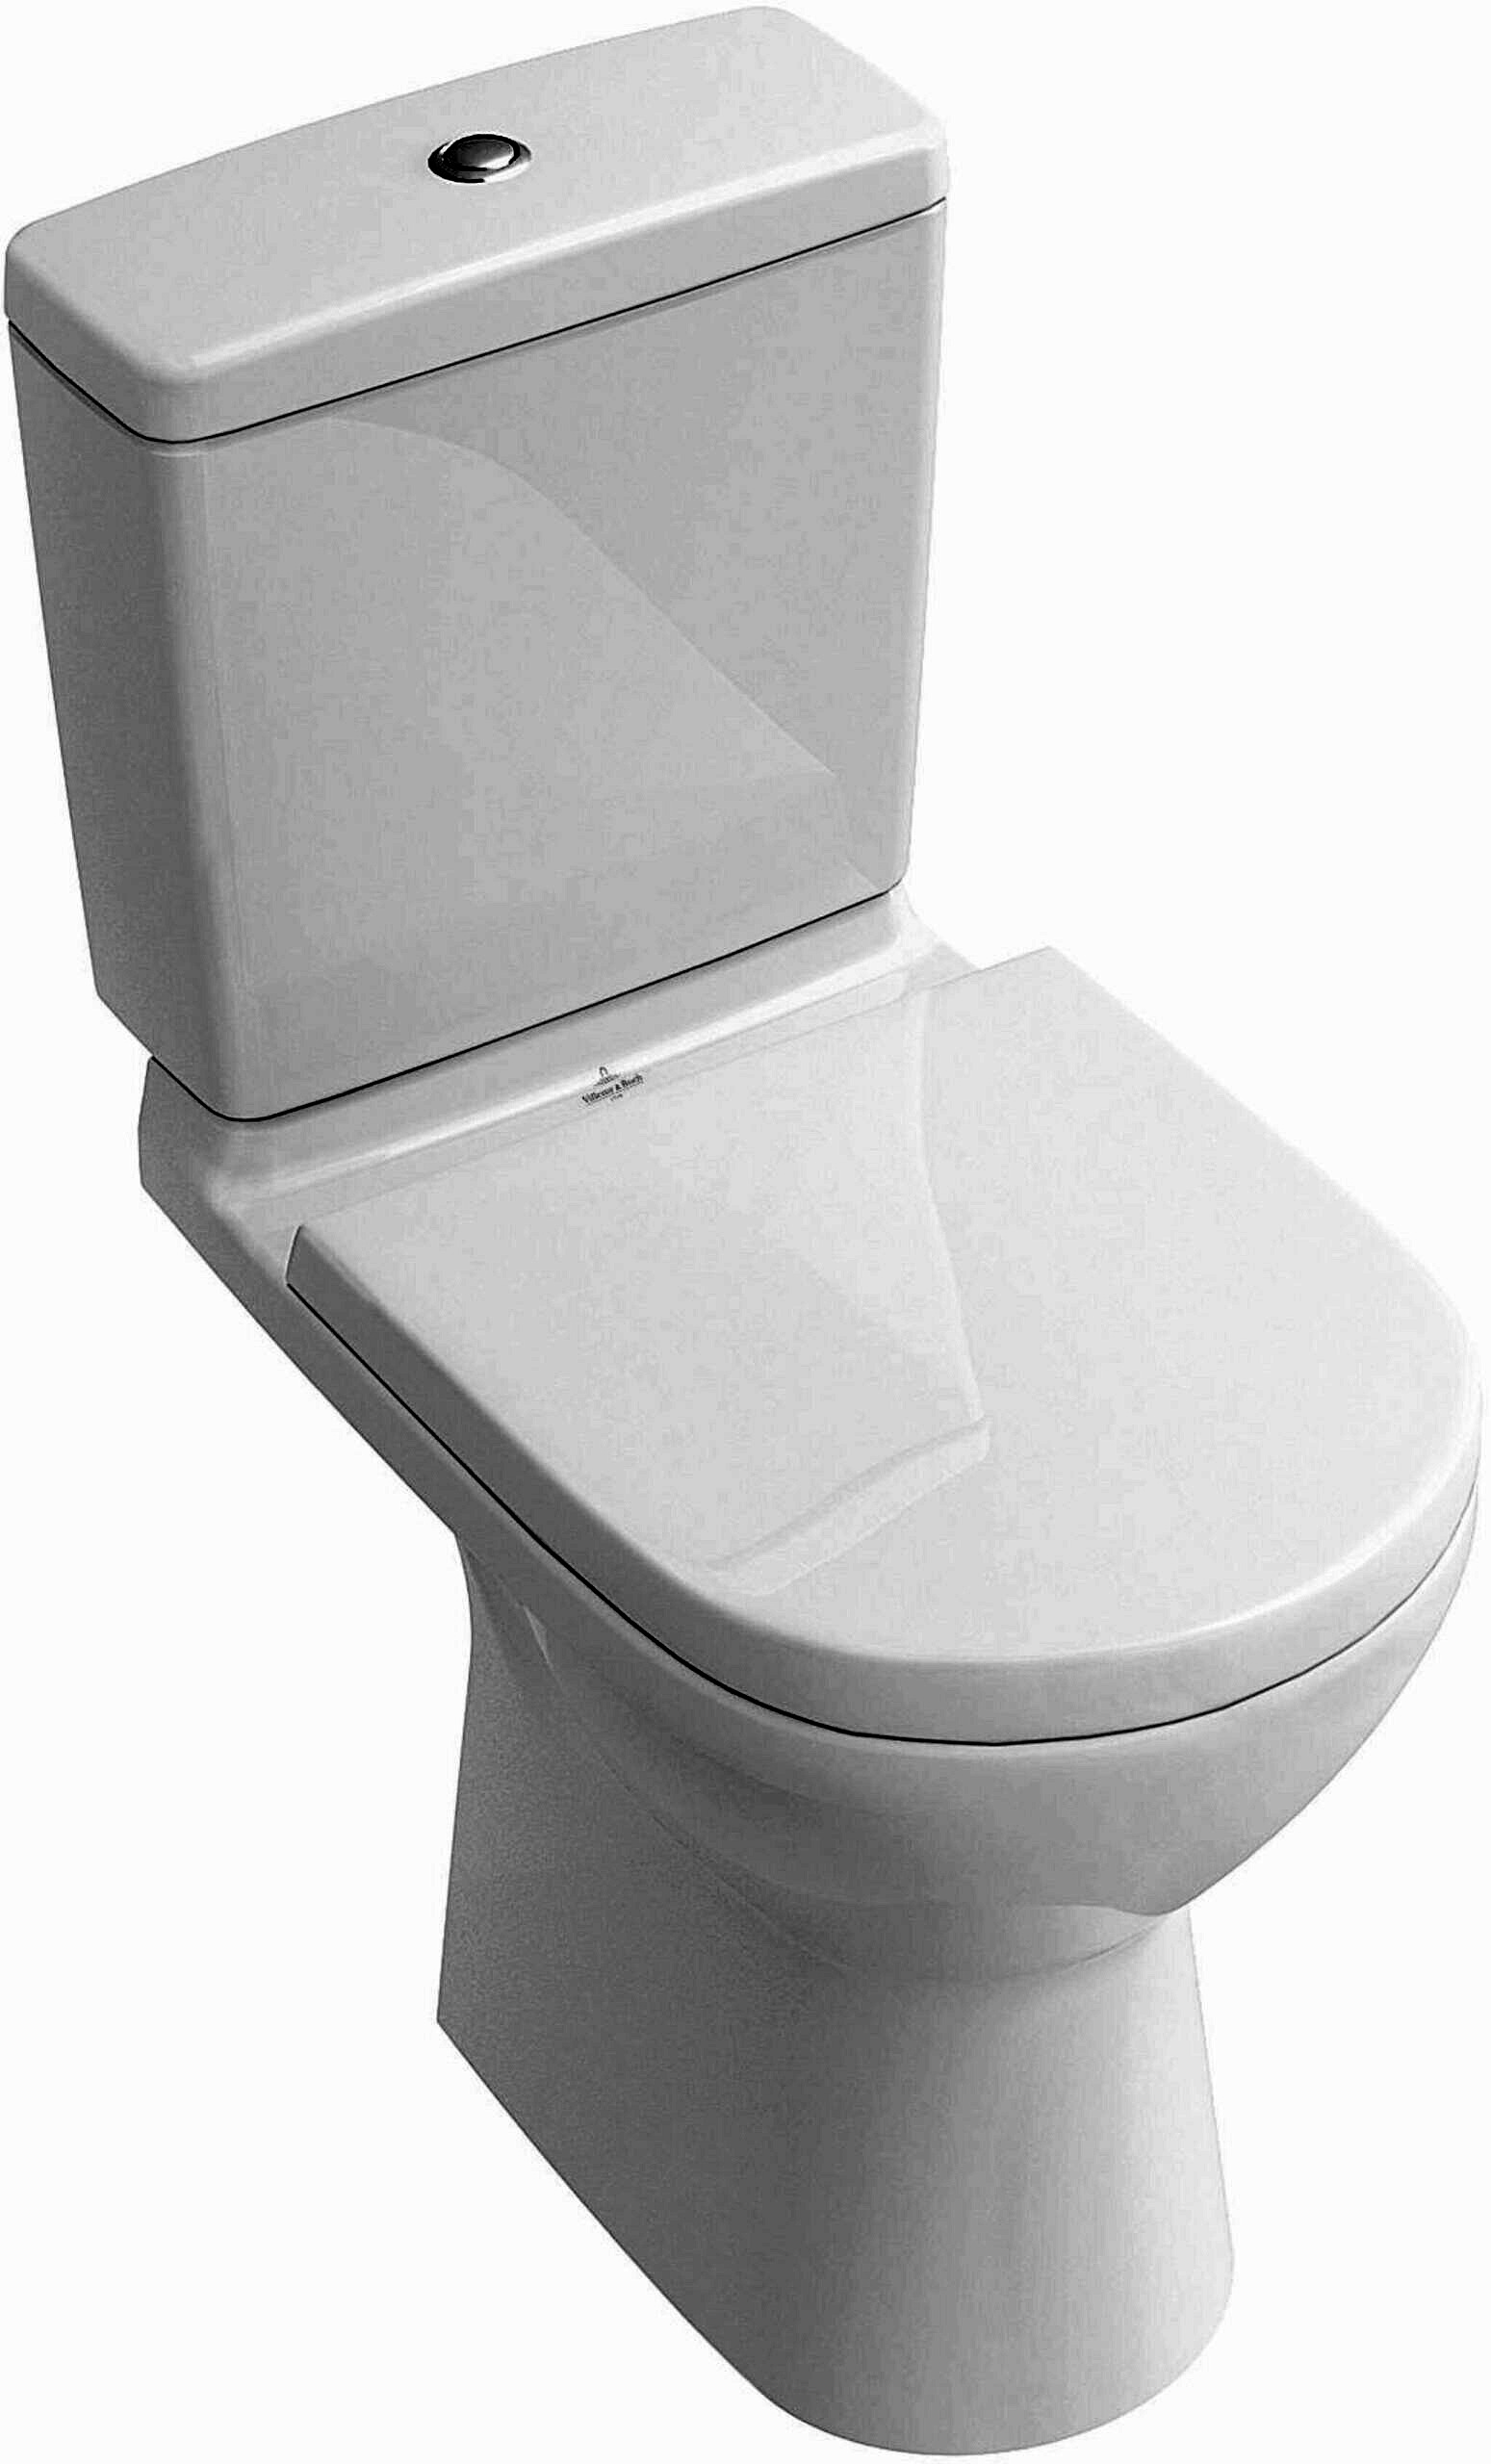 Mesures Brutes Pour Les Toilettes. Comment Verifier Les Specifications